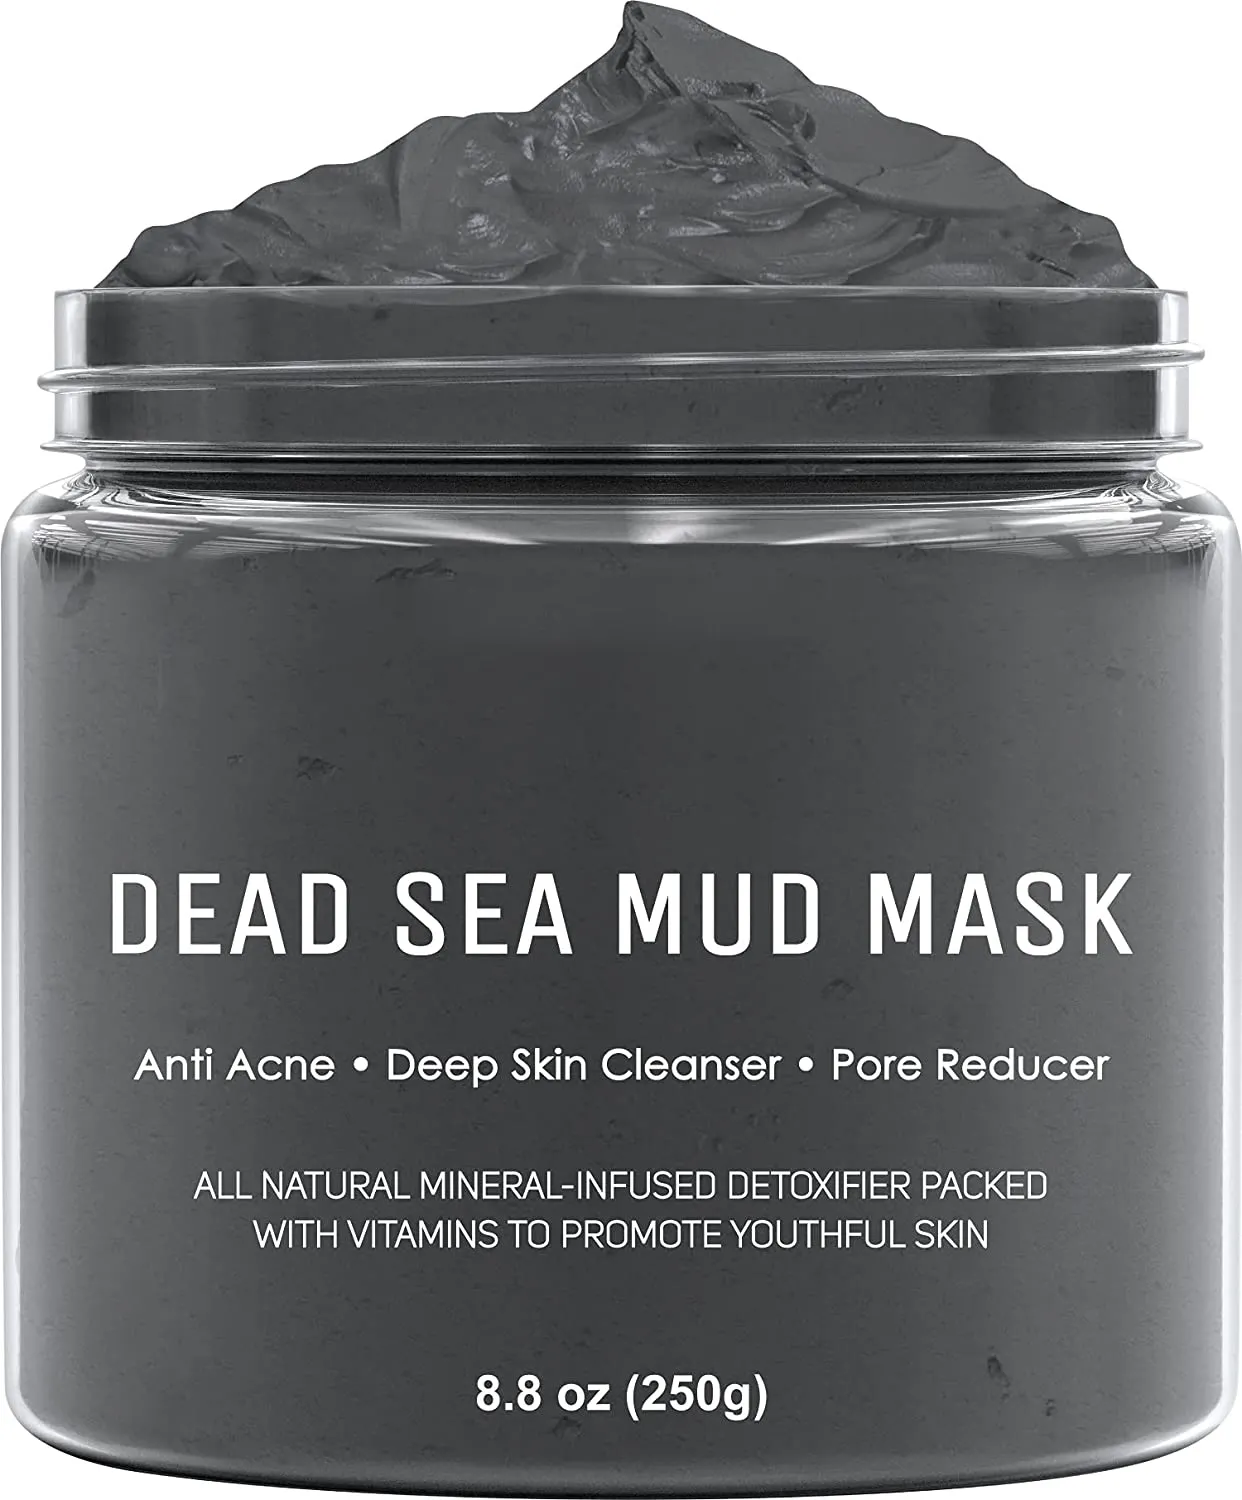 Schlamm maske aus dem Toten Meer Gesichts maske für die Hautpflege Gesichts peeling und Poren reduzierer mit Mineralien aus dem Toten Meer